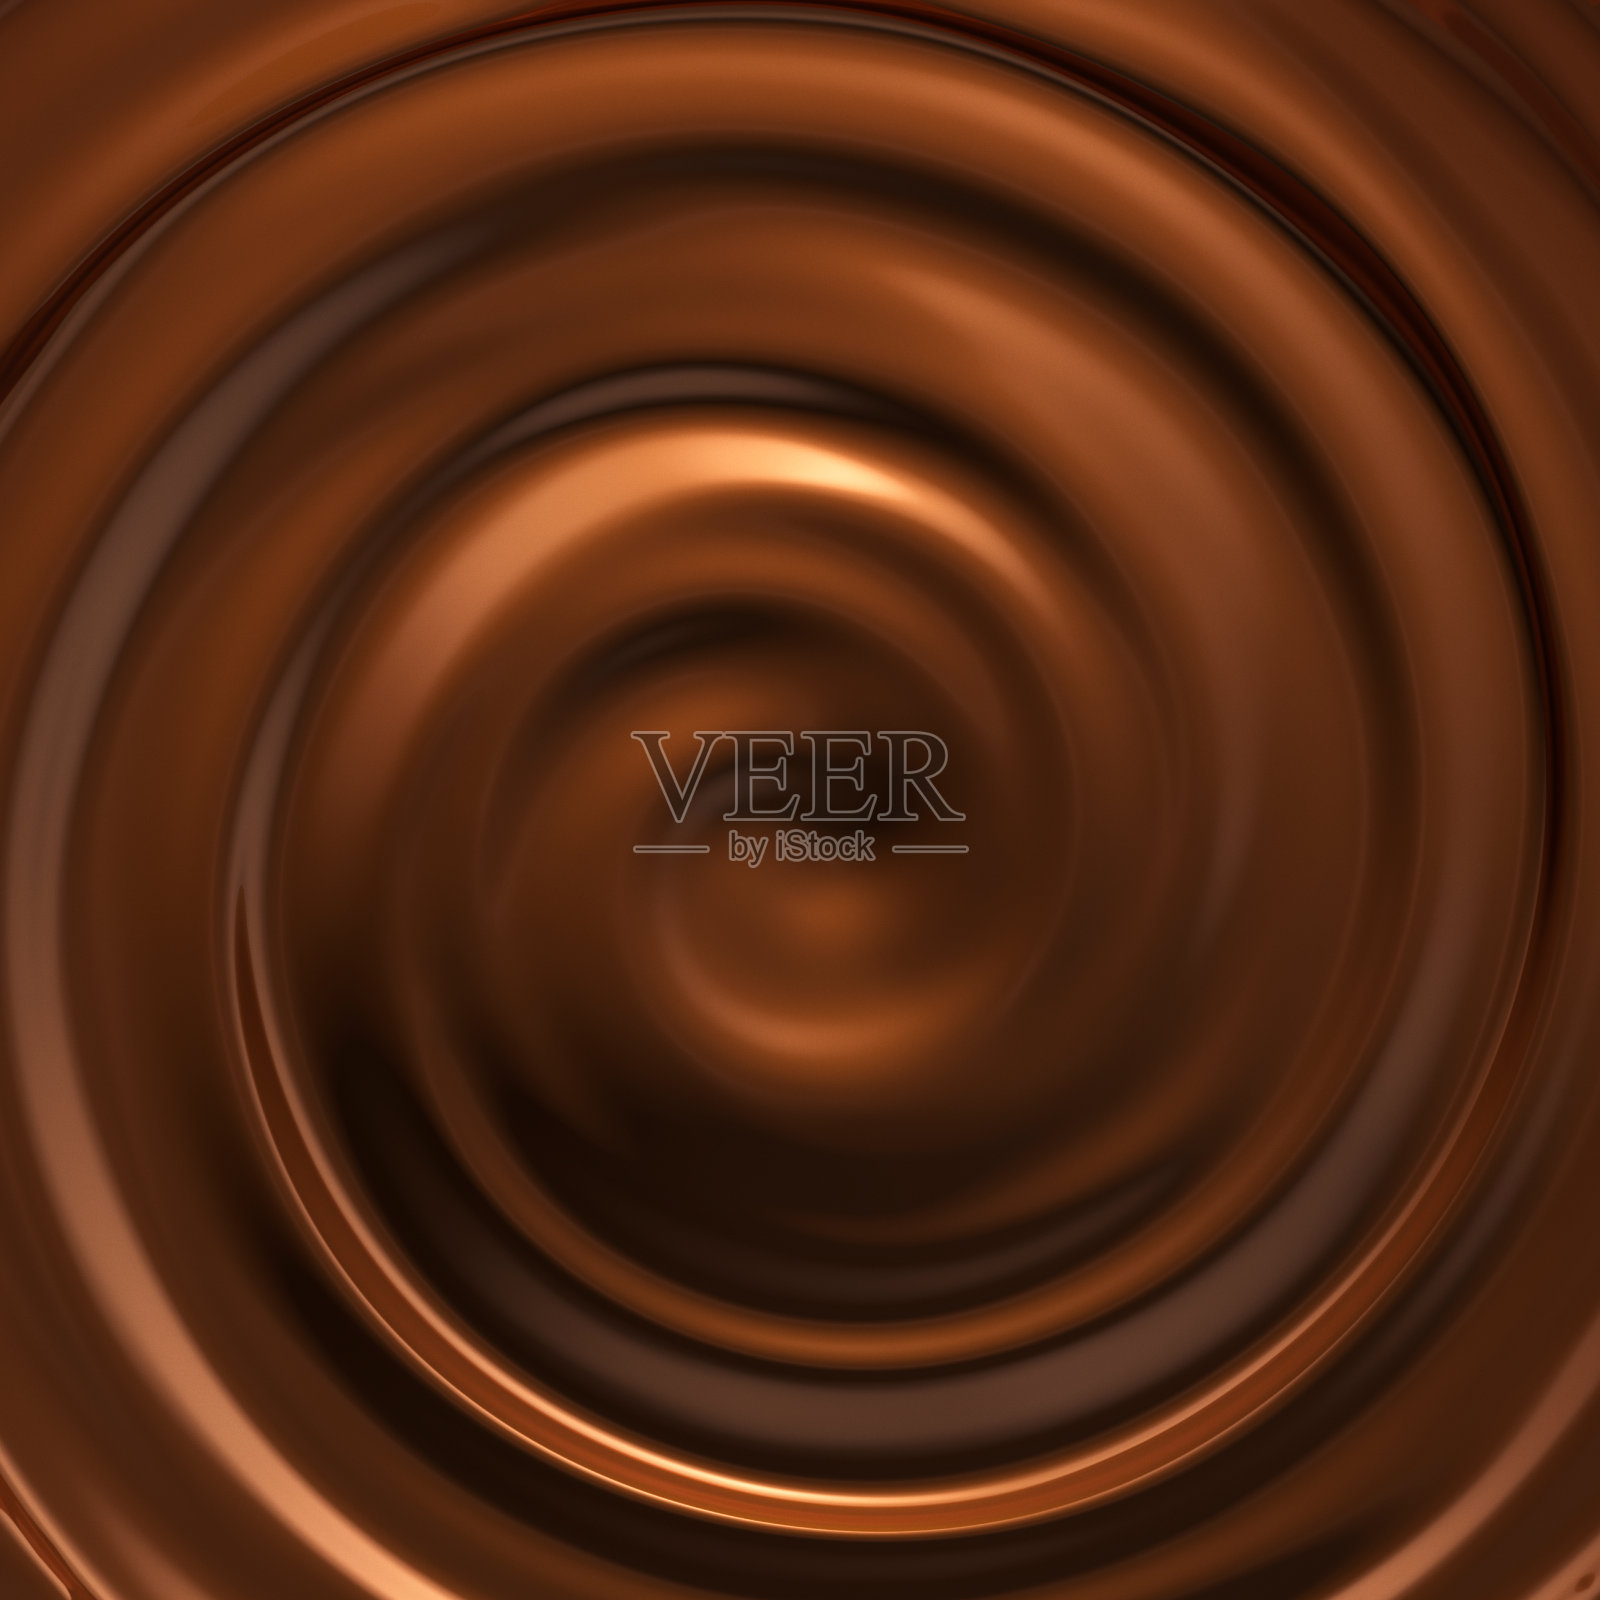 融化的巧克力漩涡照片摄影图片